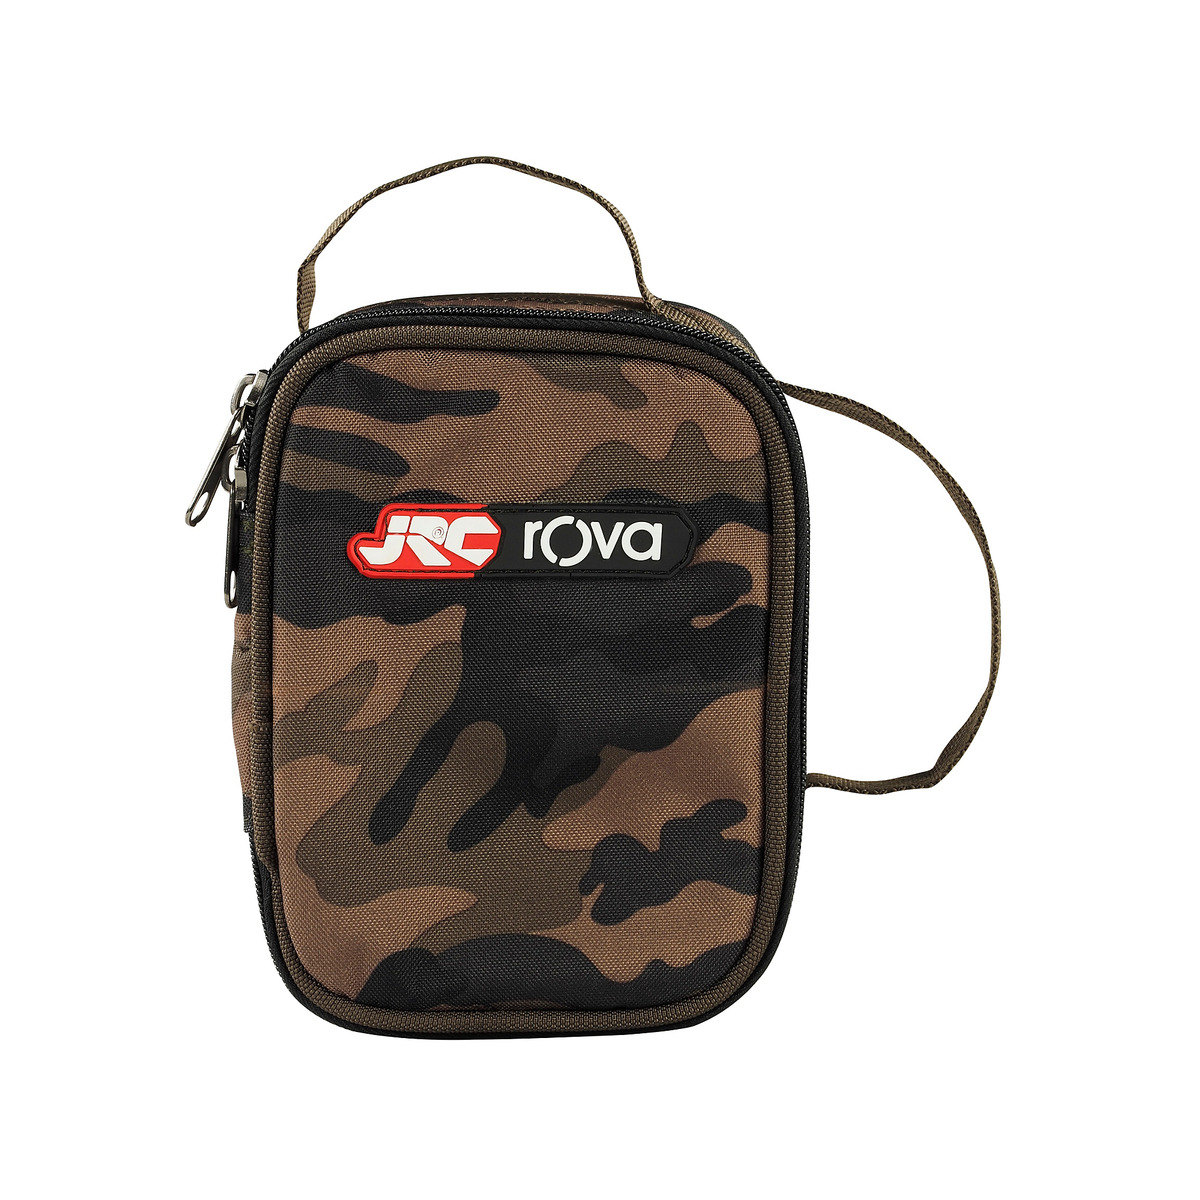 Jrc Rova  Accessory Bag Small - Small